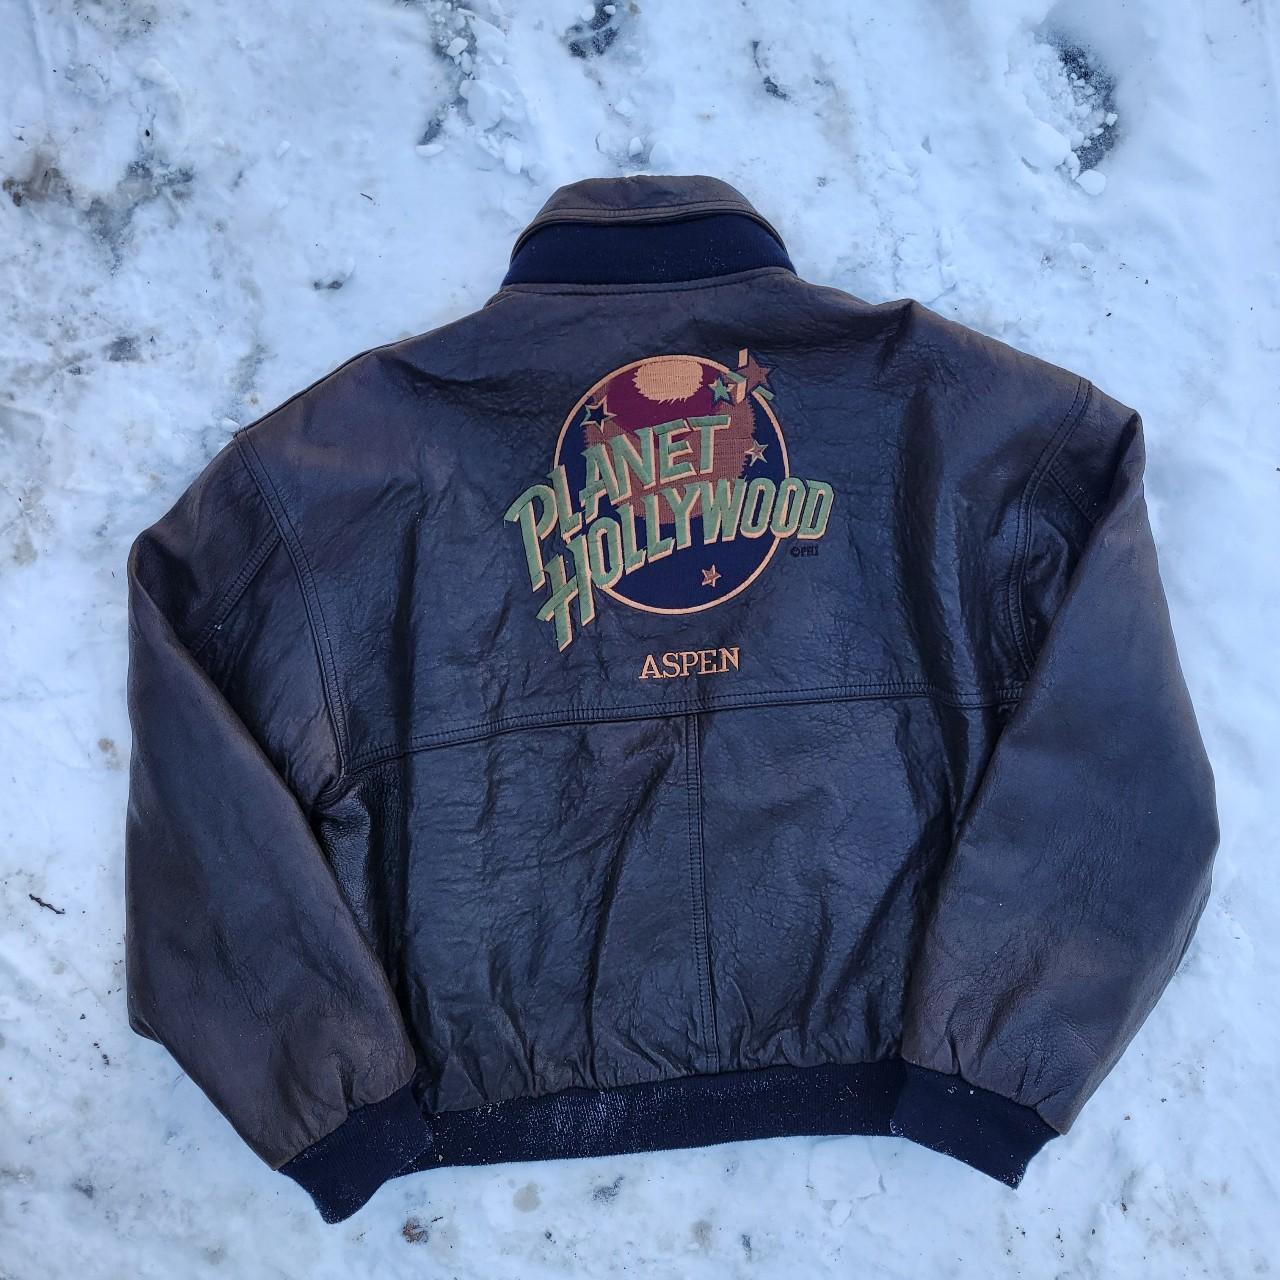 Vintage 90s Planet Hollywood leather jacket. Rare... - Depop